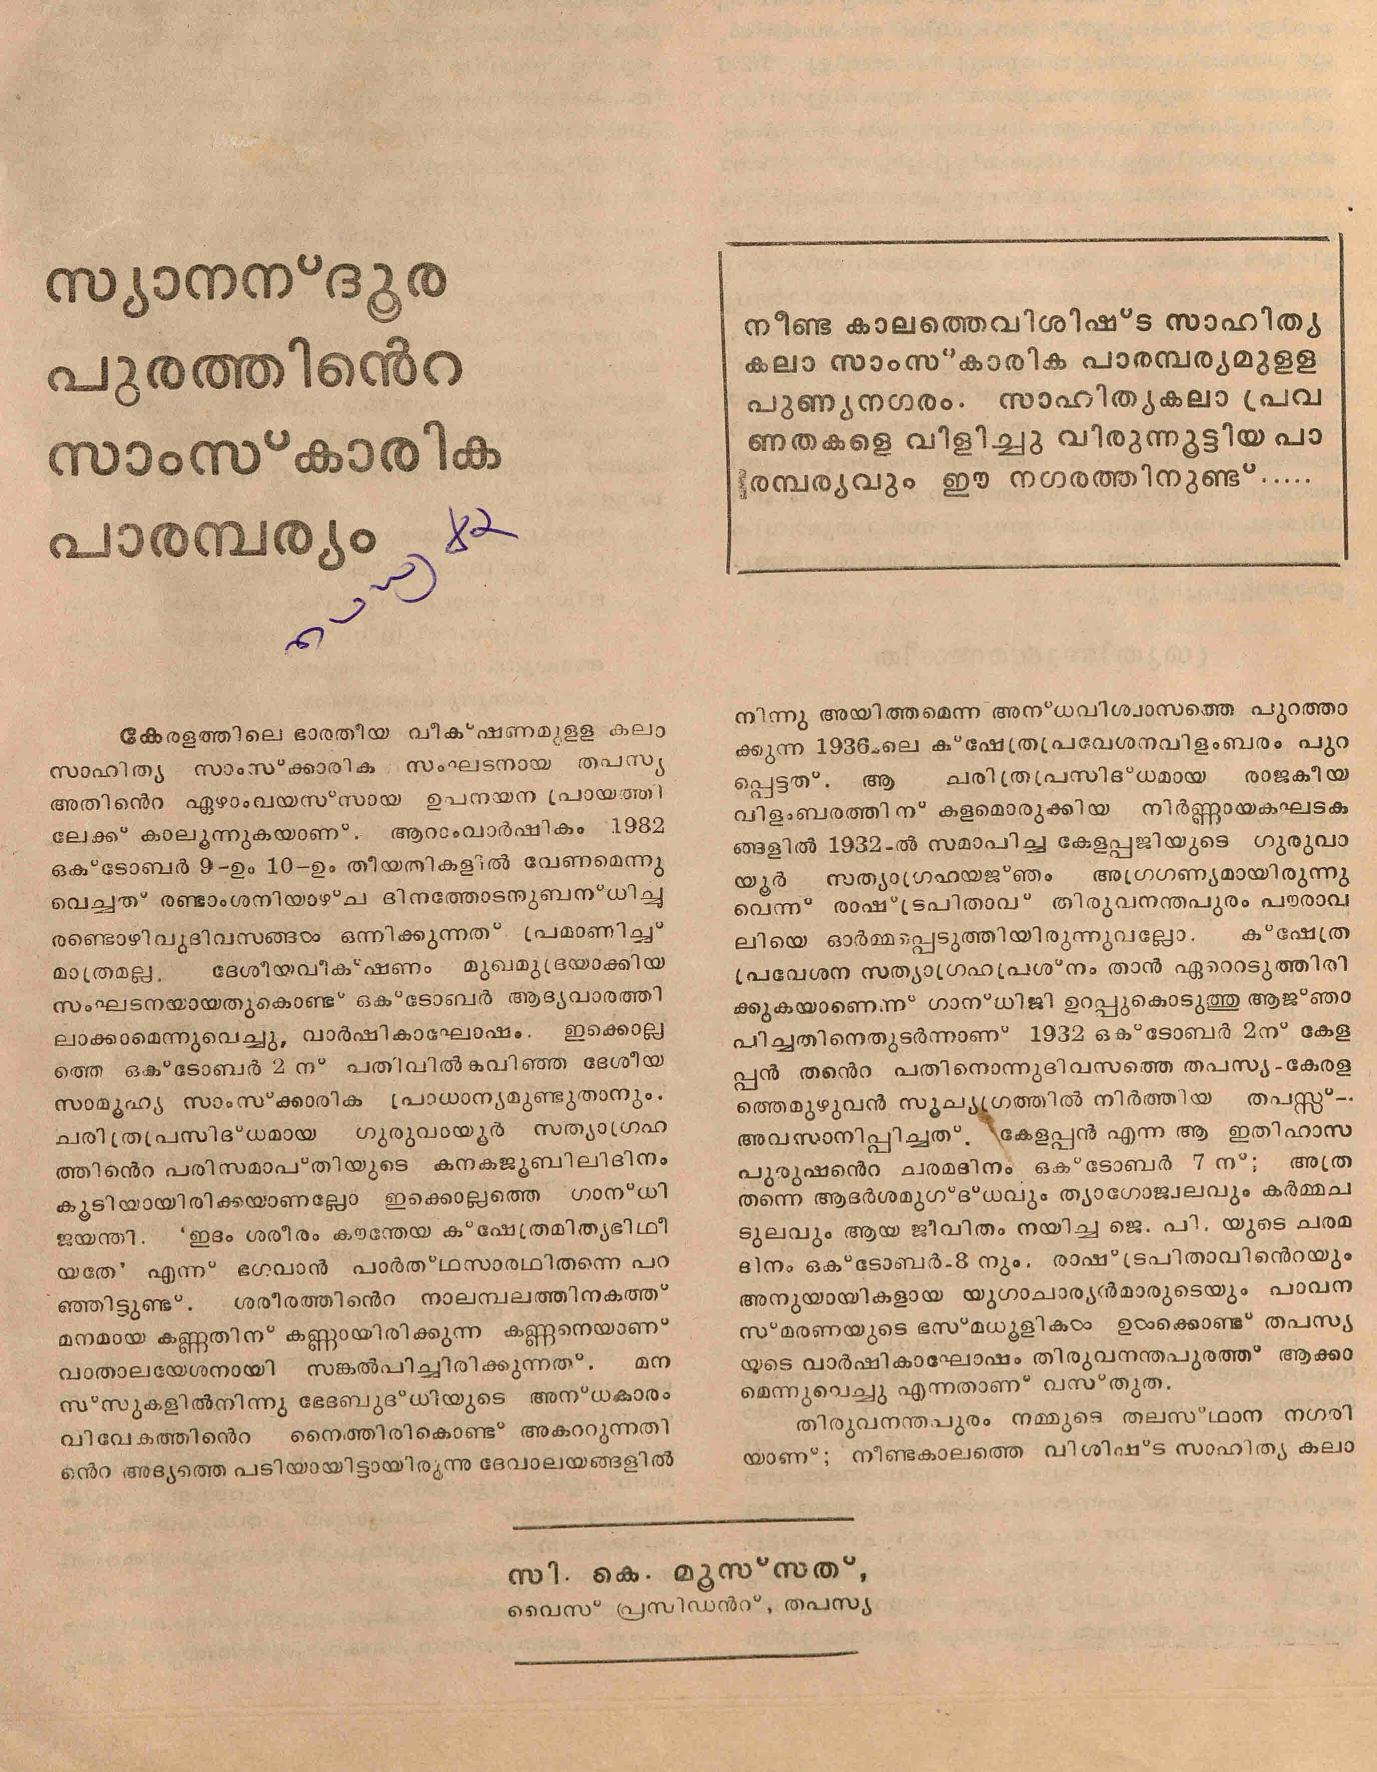 1982- സ്യാനന്ദൂരപുരത്തിൻ്റെ സാംസ്കാരിക പാരമ്പര്യം - സി.കെ.മൂസ്സത്